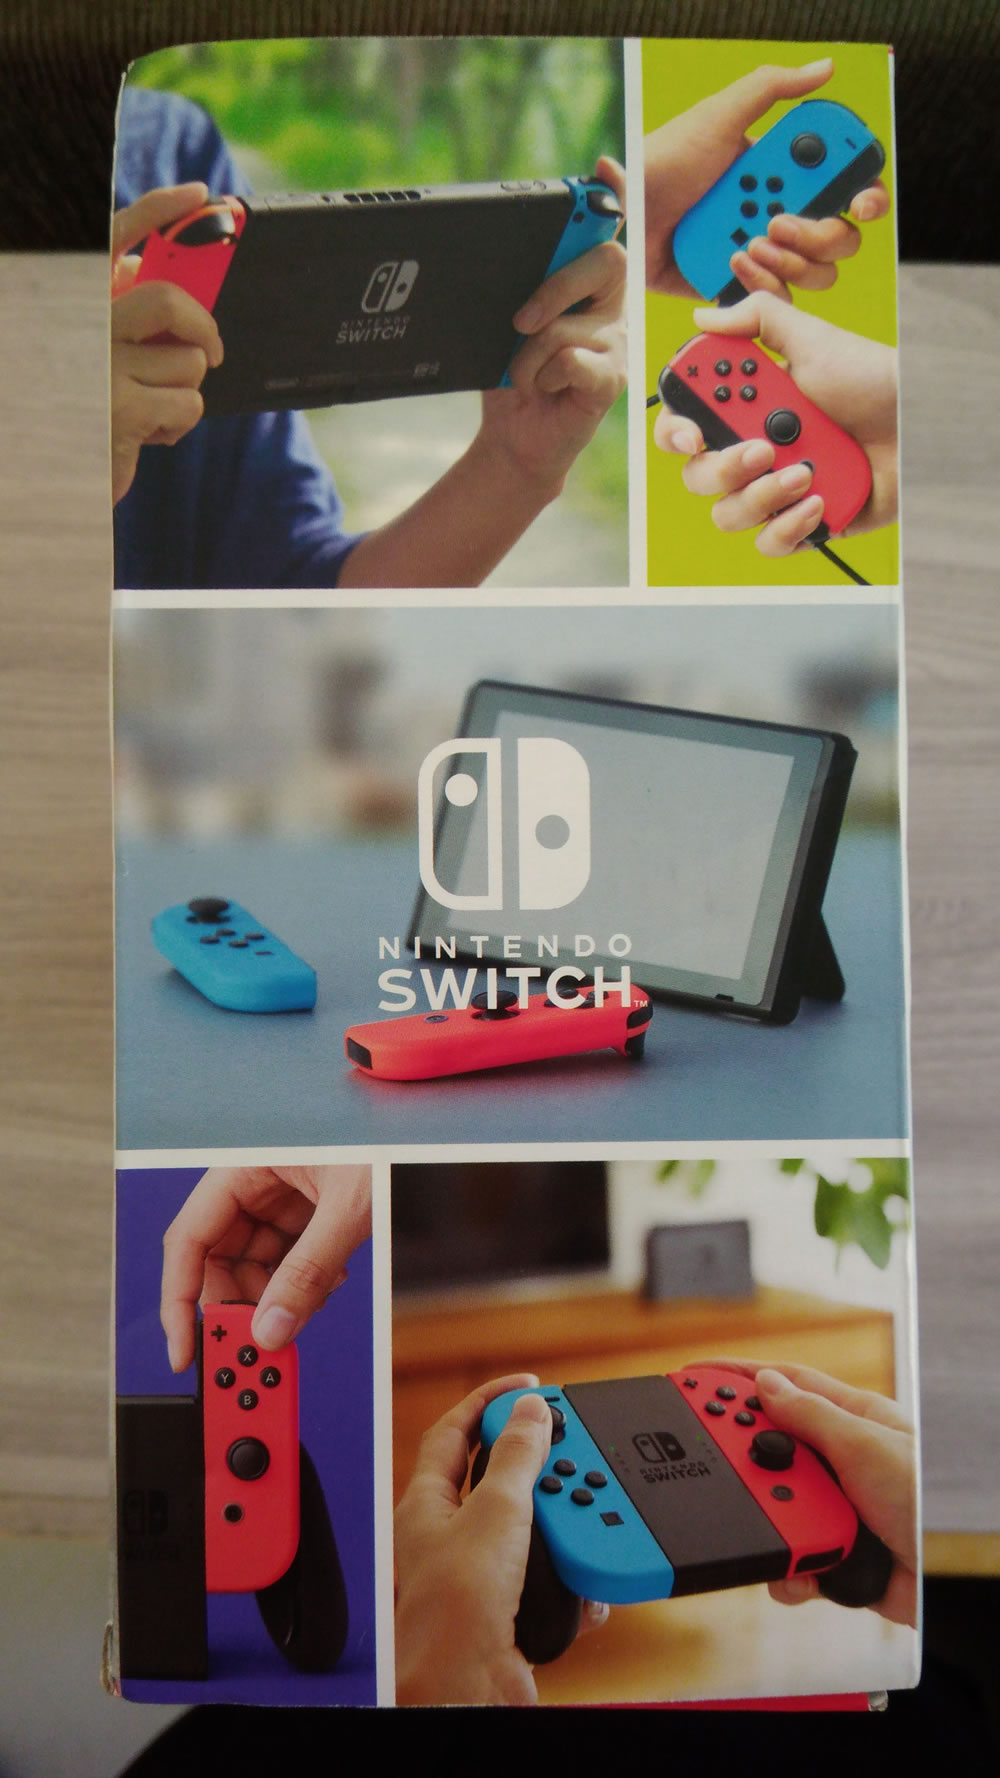 Como o Nintendo Switch virou o melhor amigo dos indies - 27/09/2017 - UOL  Start